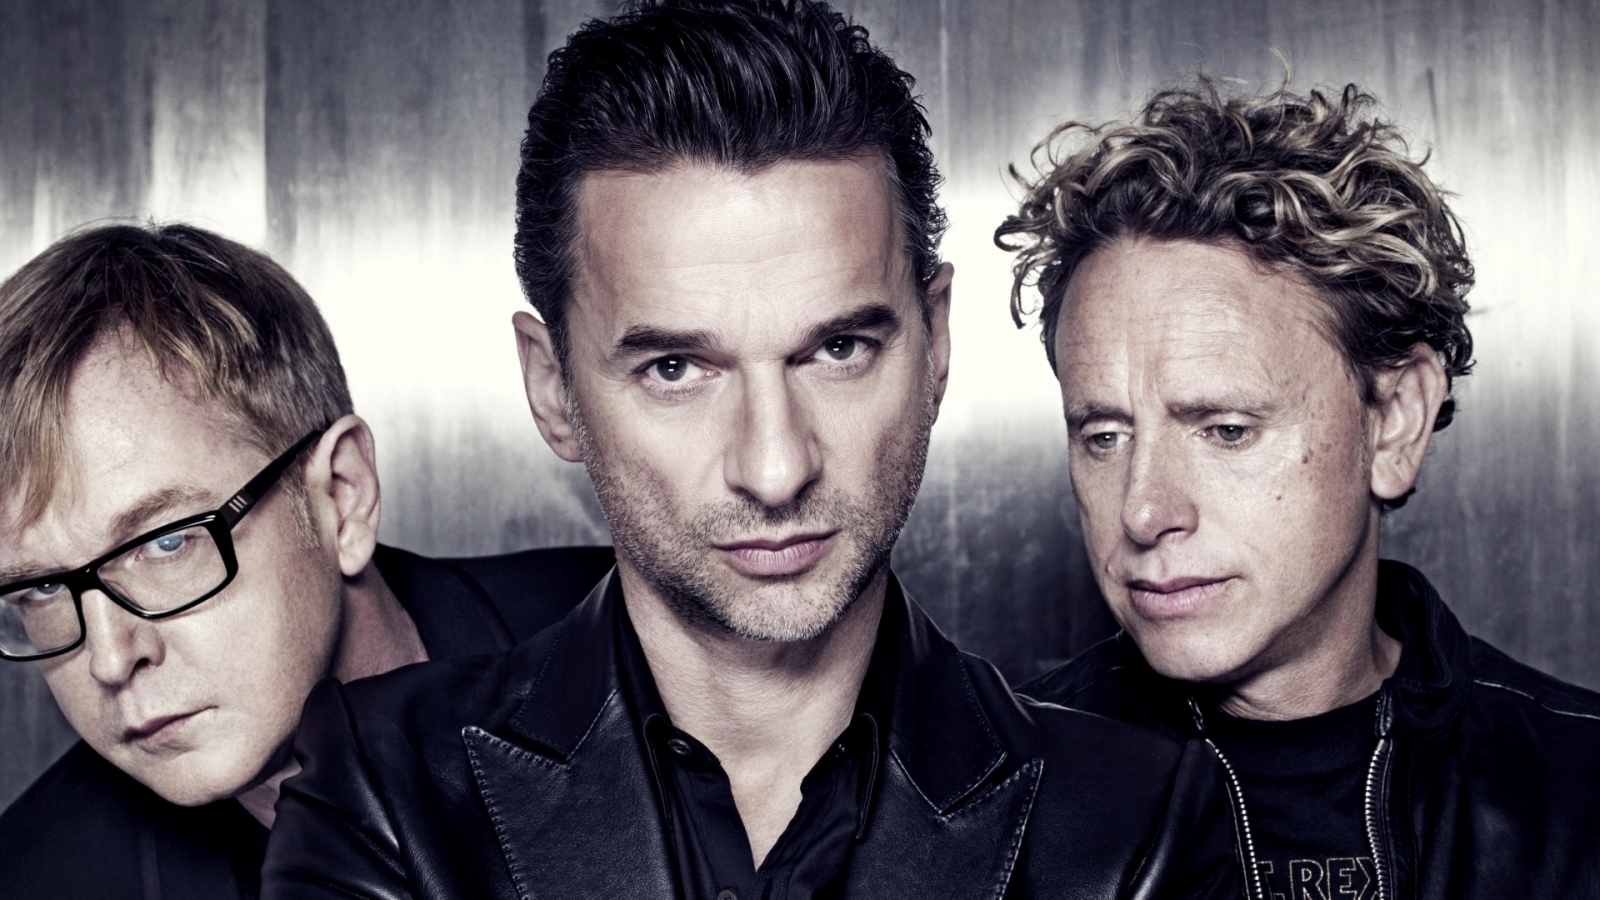 Depeche Mode Poster for 1600 x 900 HDTV resolution